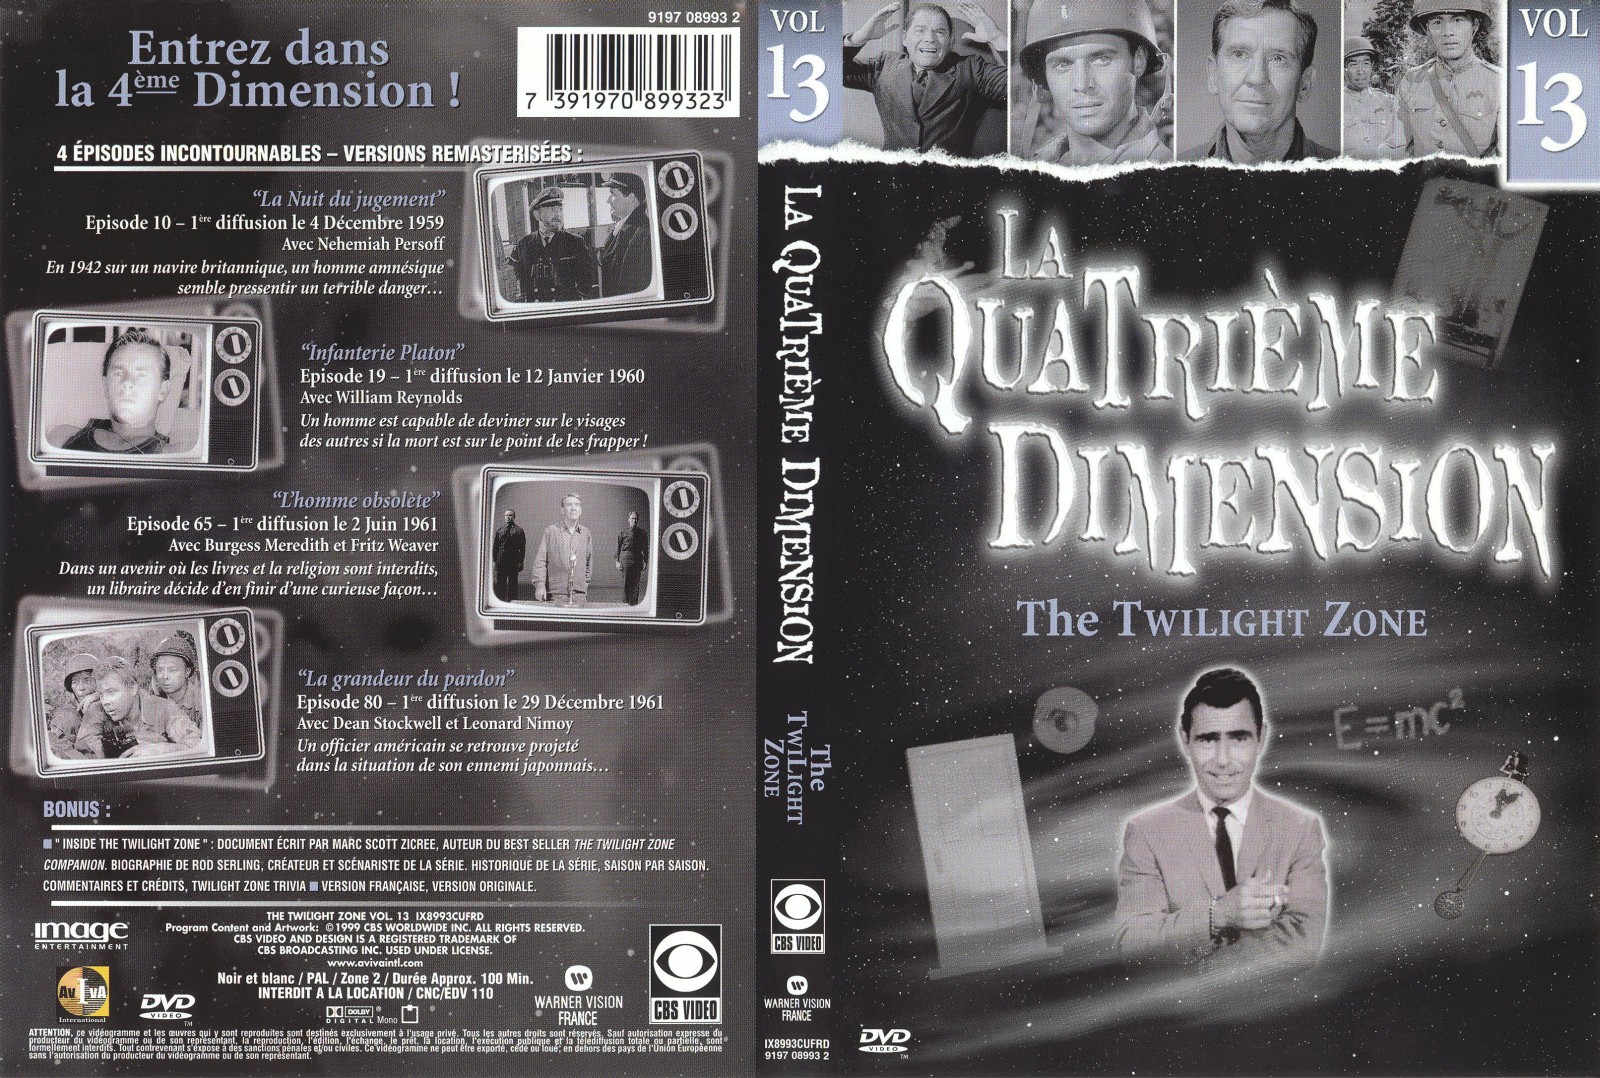 Jaquette DVD La quatrieme dimension vol 13